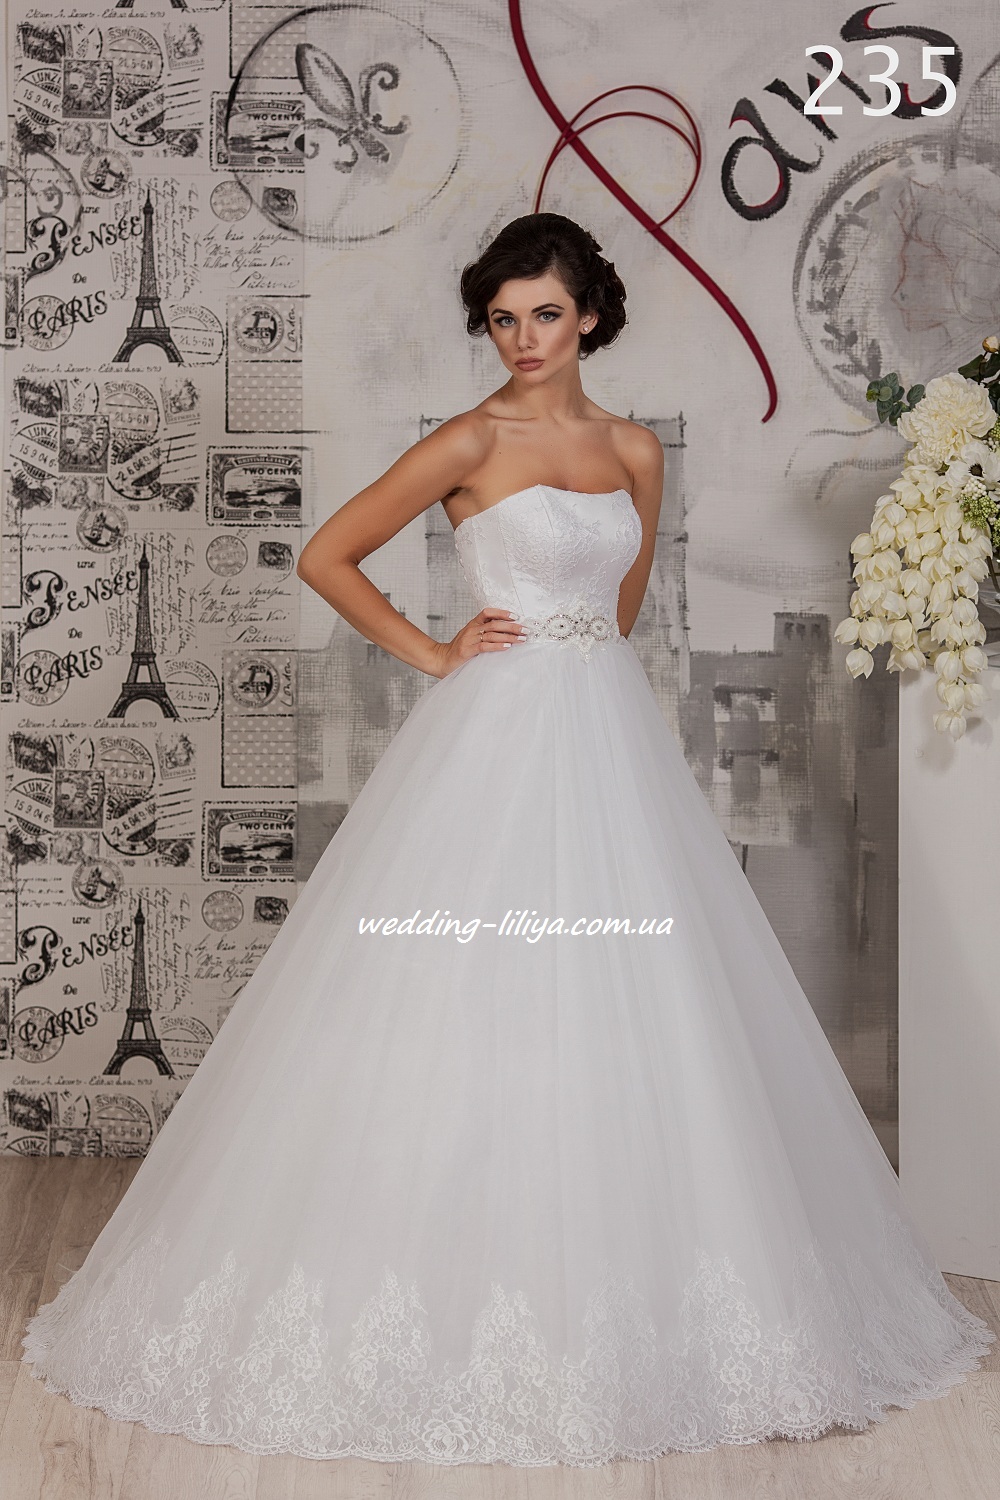 Свадебное платье №235